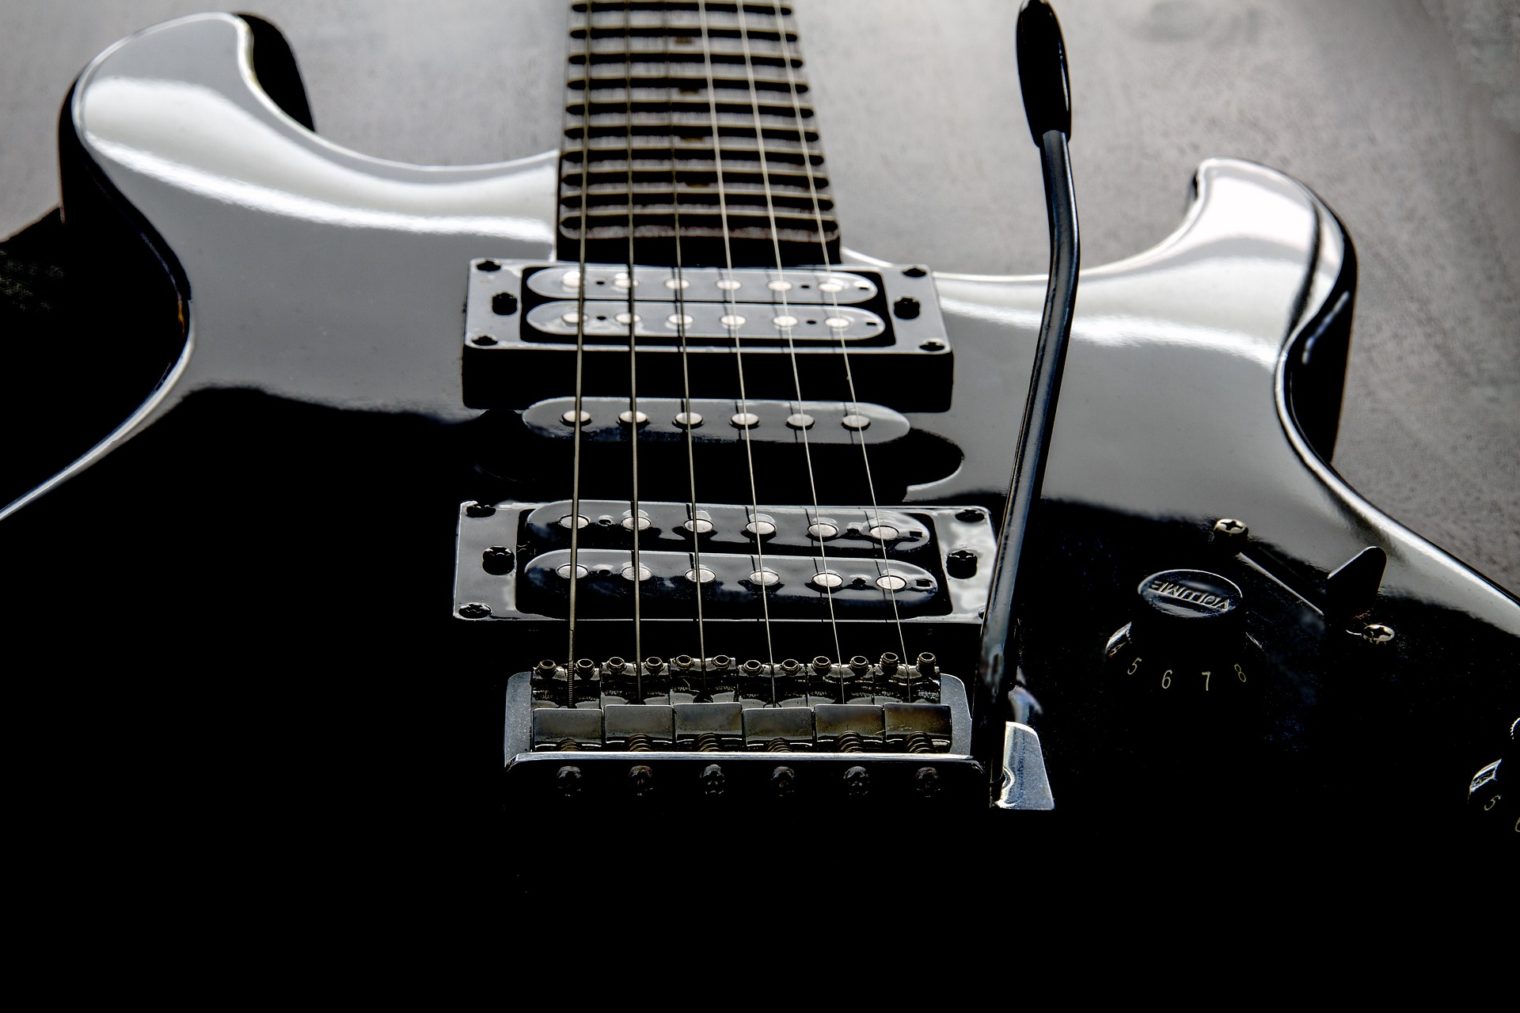 Symbolbild E-Gitarre in schwarz-weiß